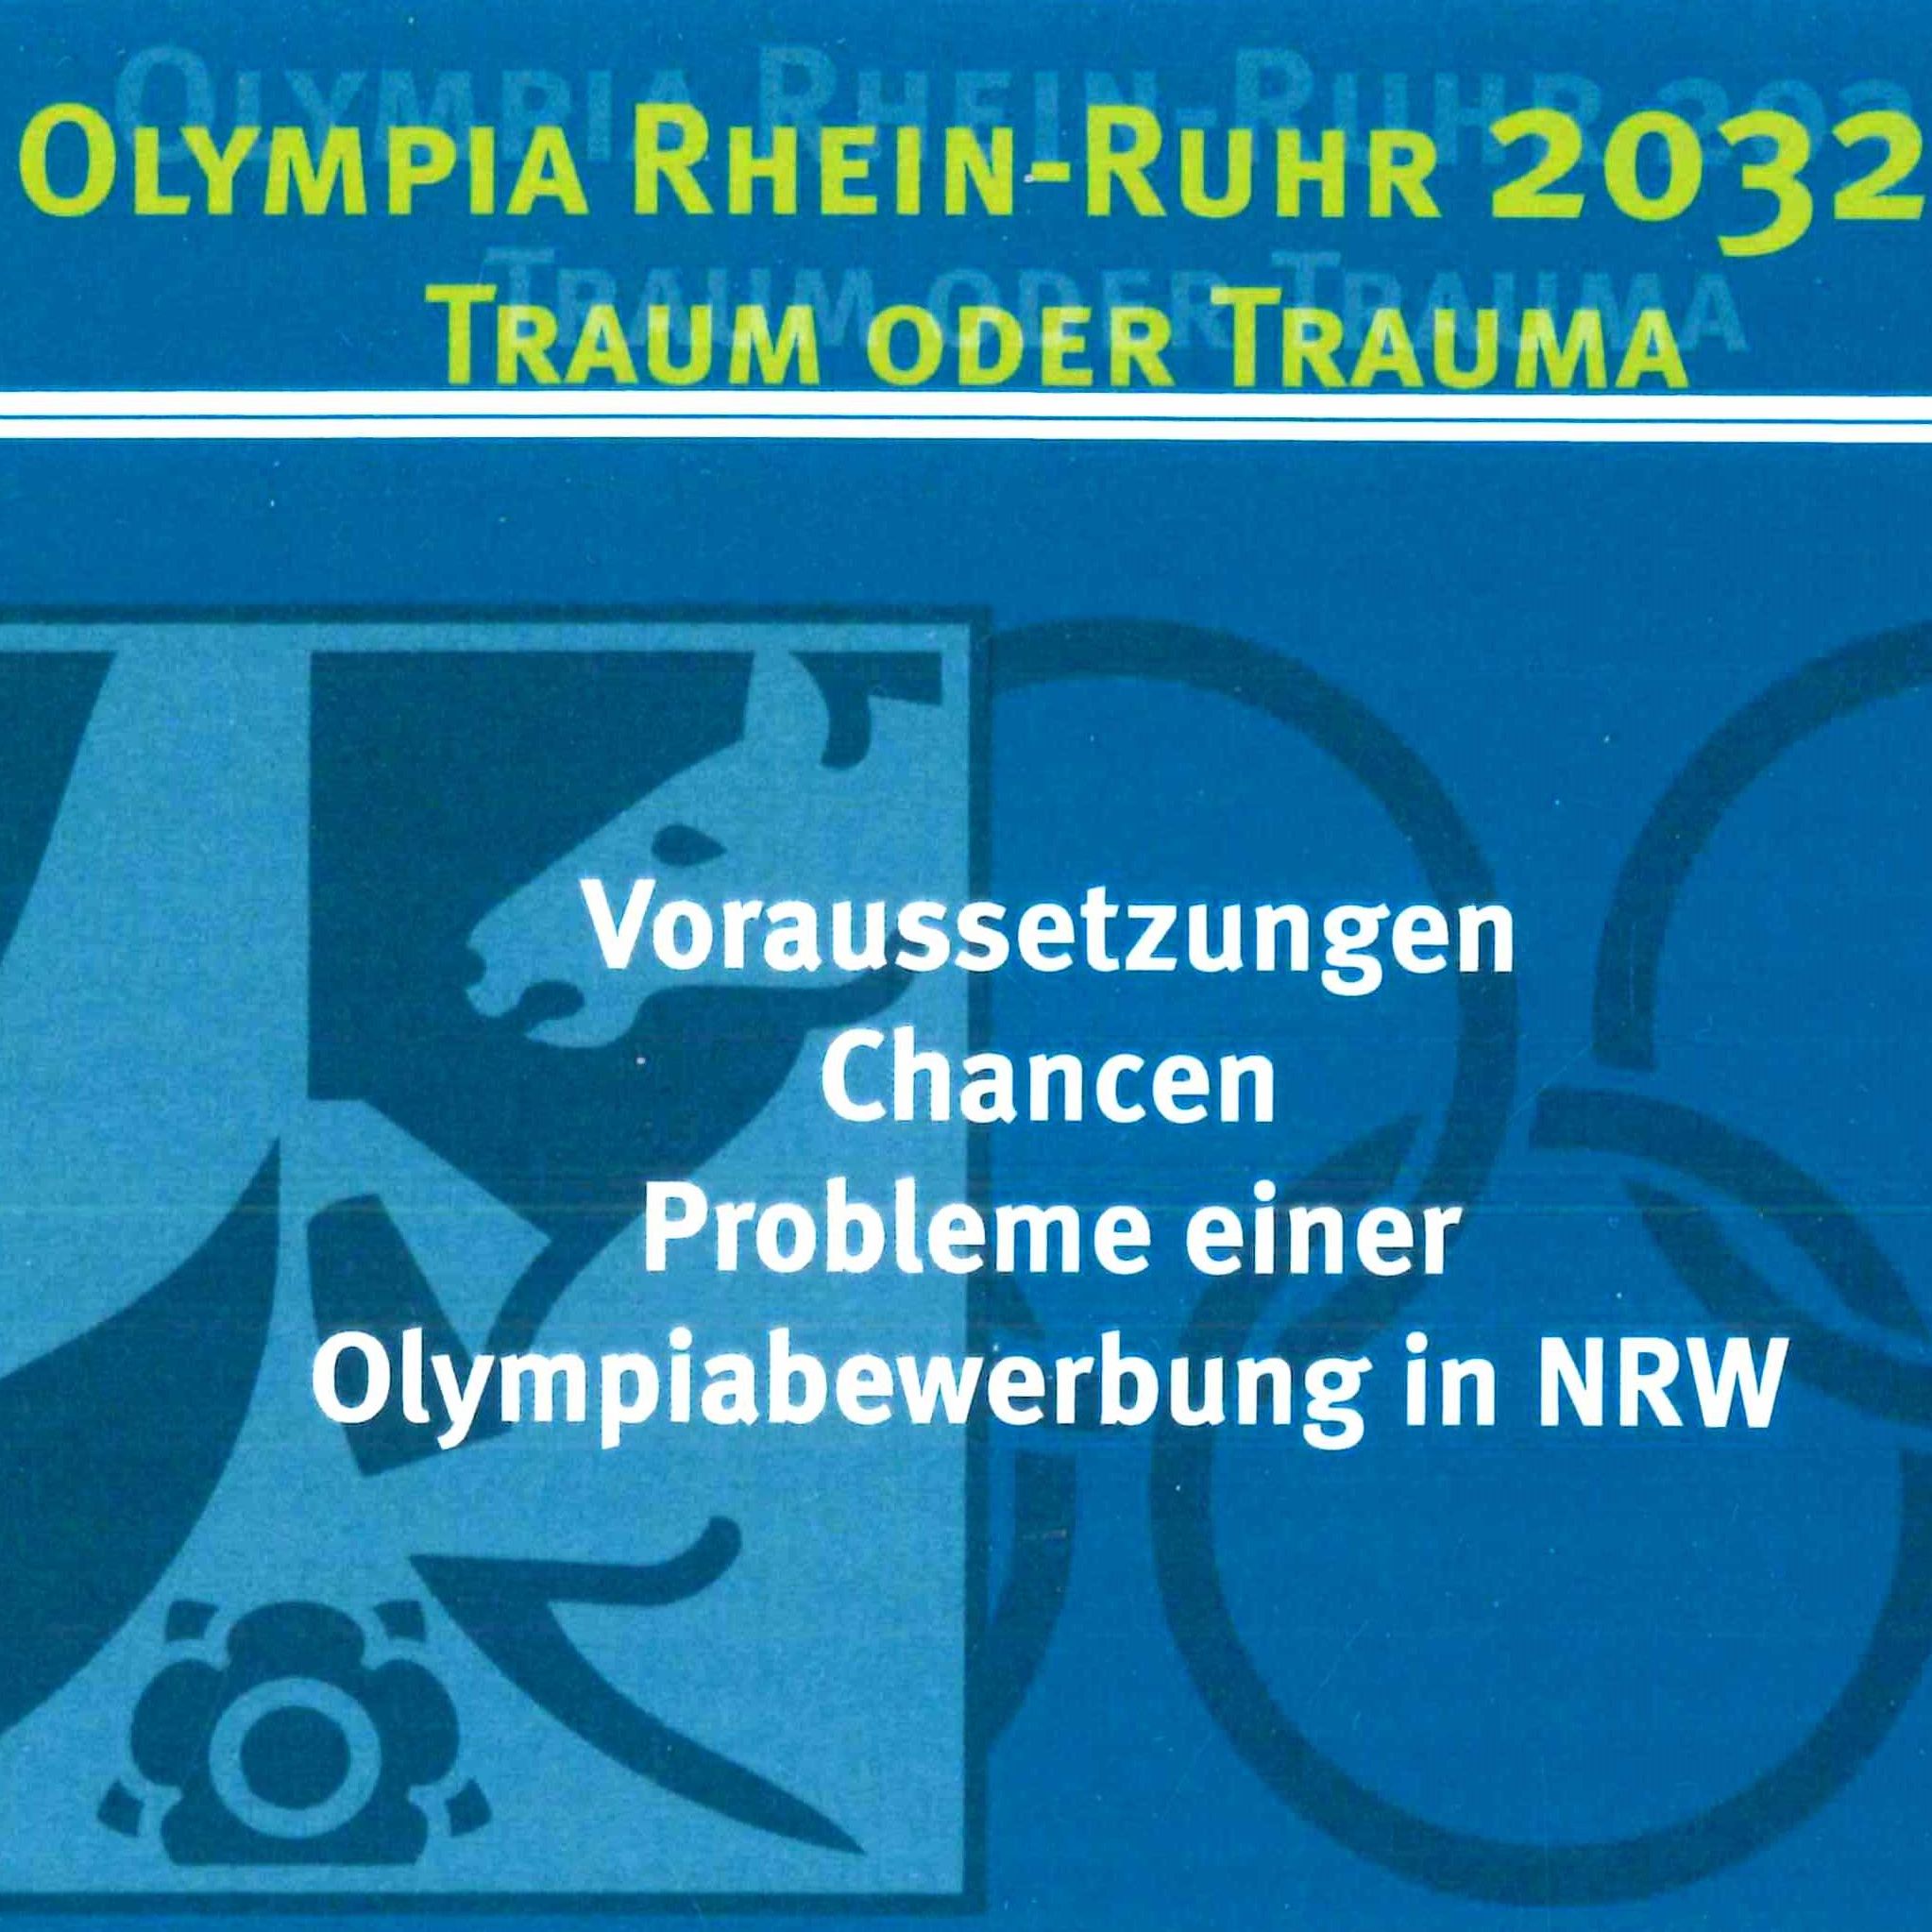 Olympia Rhein-ruhr 2032 01-1